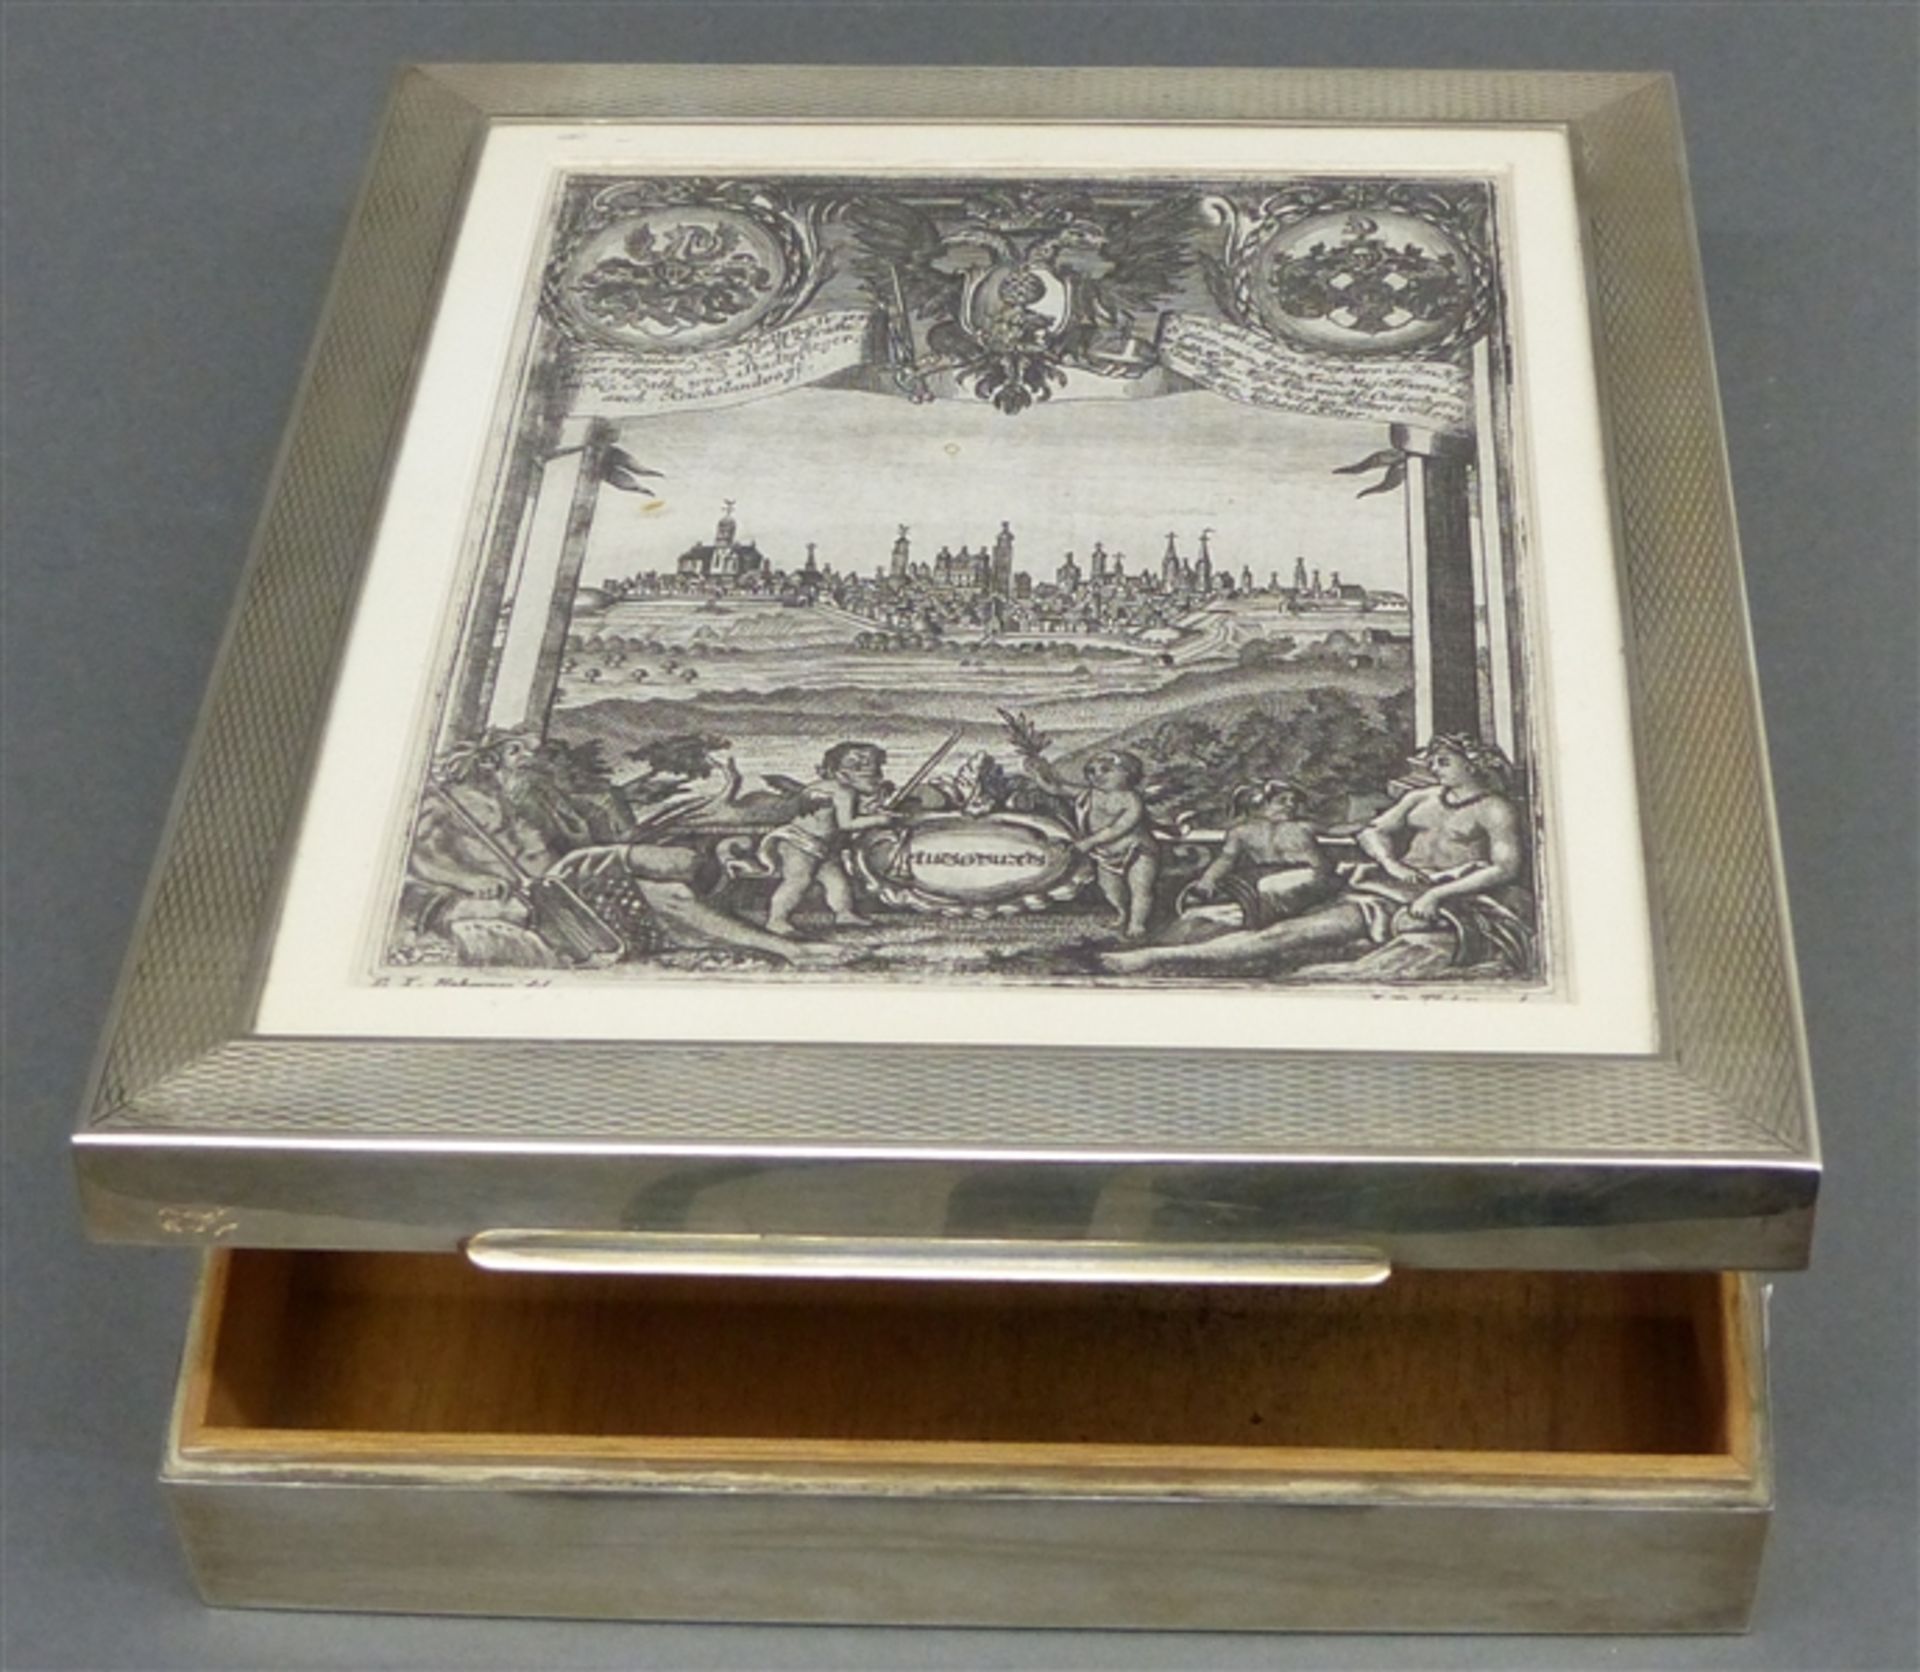 Schatulle Silber, aufklappbar, mit Augsburger Thellottstich, Inneneinteilung, Holz, 25x20 cm,